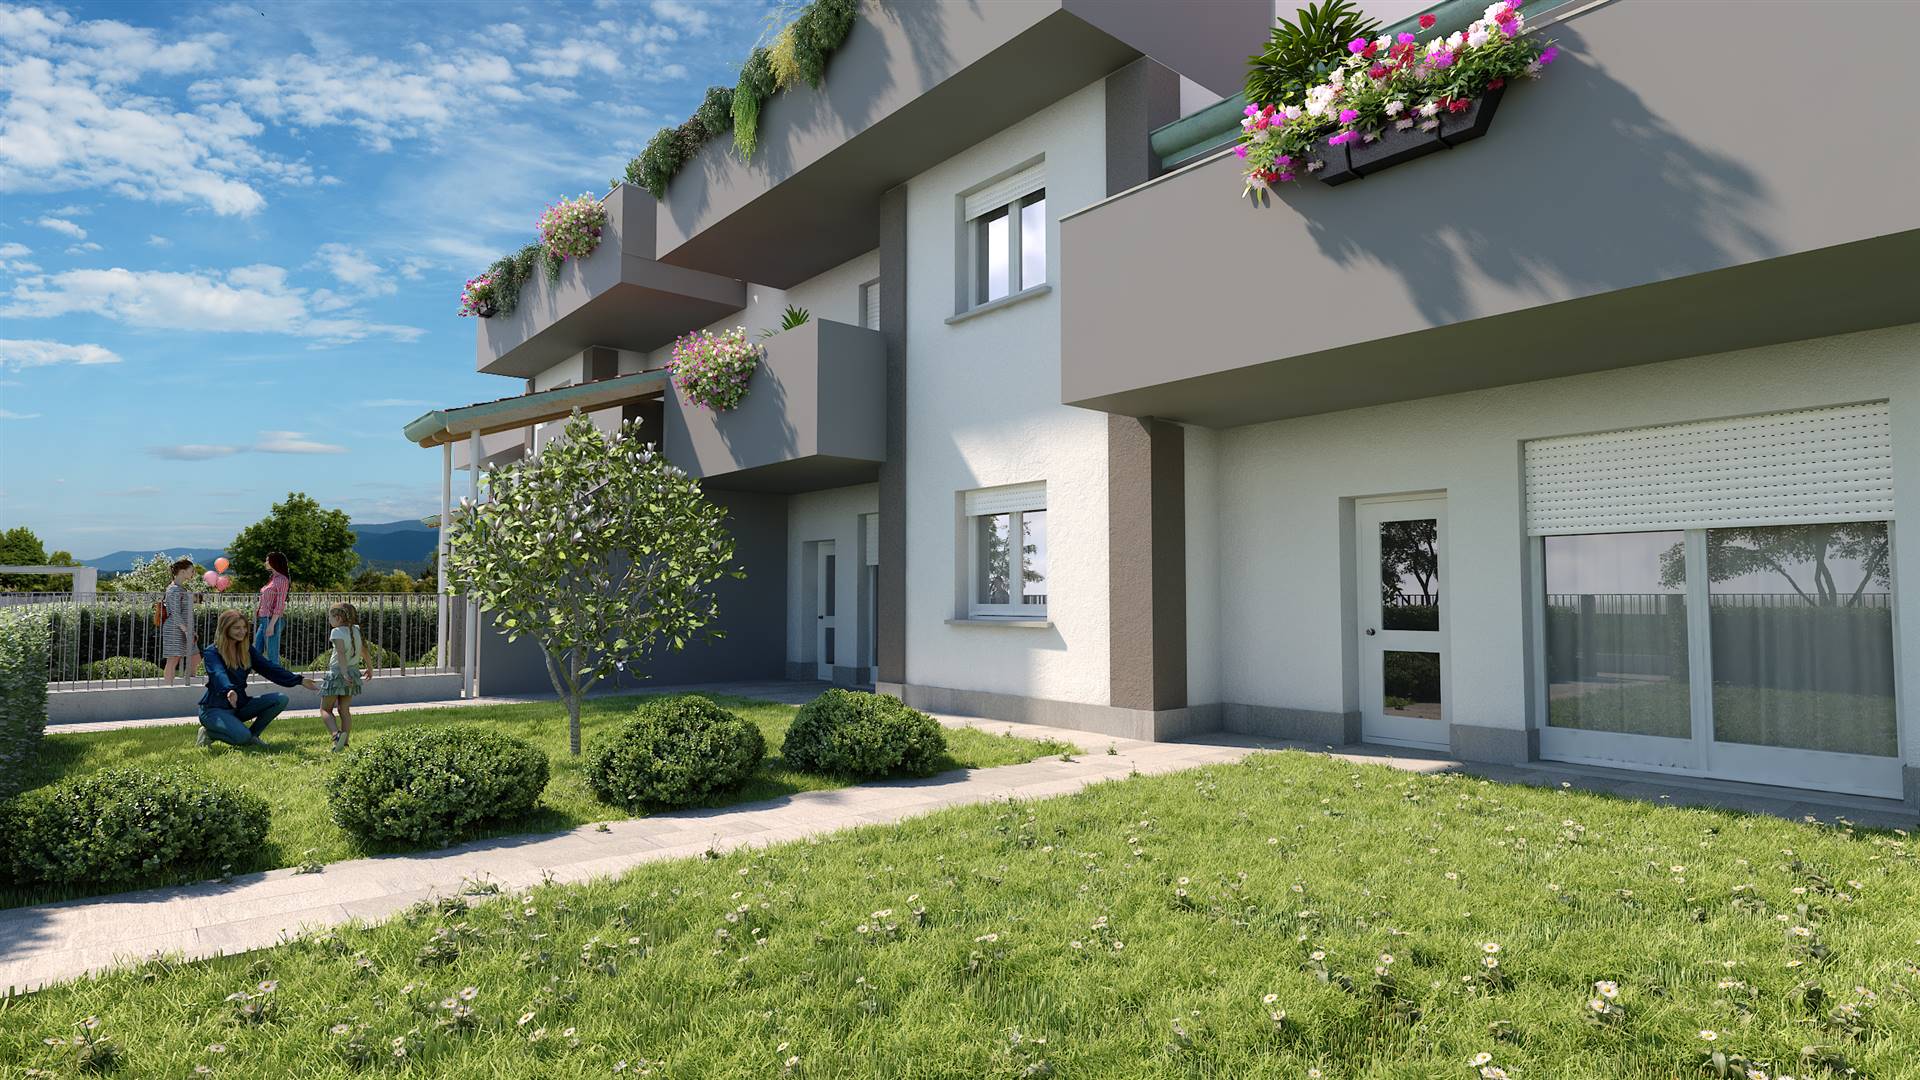 Appartamento in vendita a Ornago, 4 locali, zona Località: VIMERCATE, prezzo € 280.000 | PortaleAgenzieImmobiliari.it